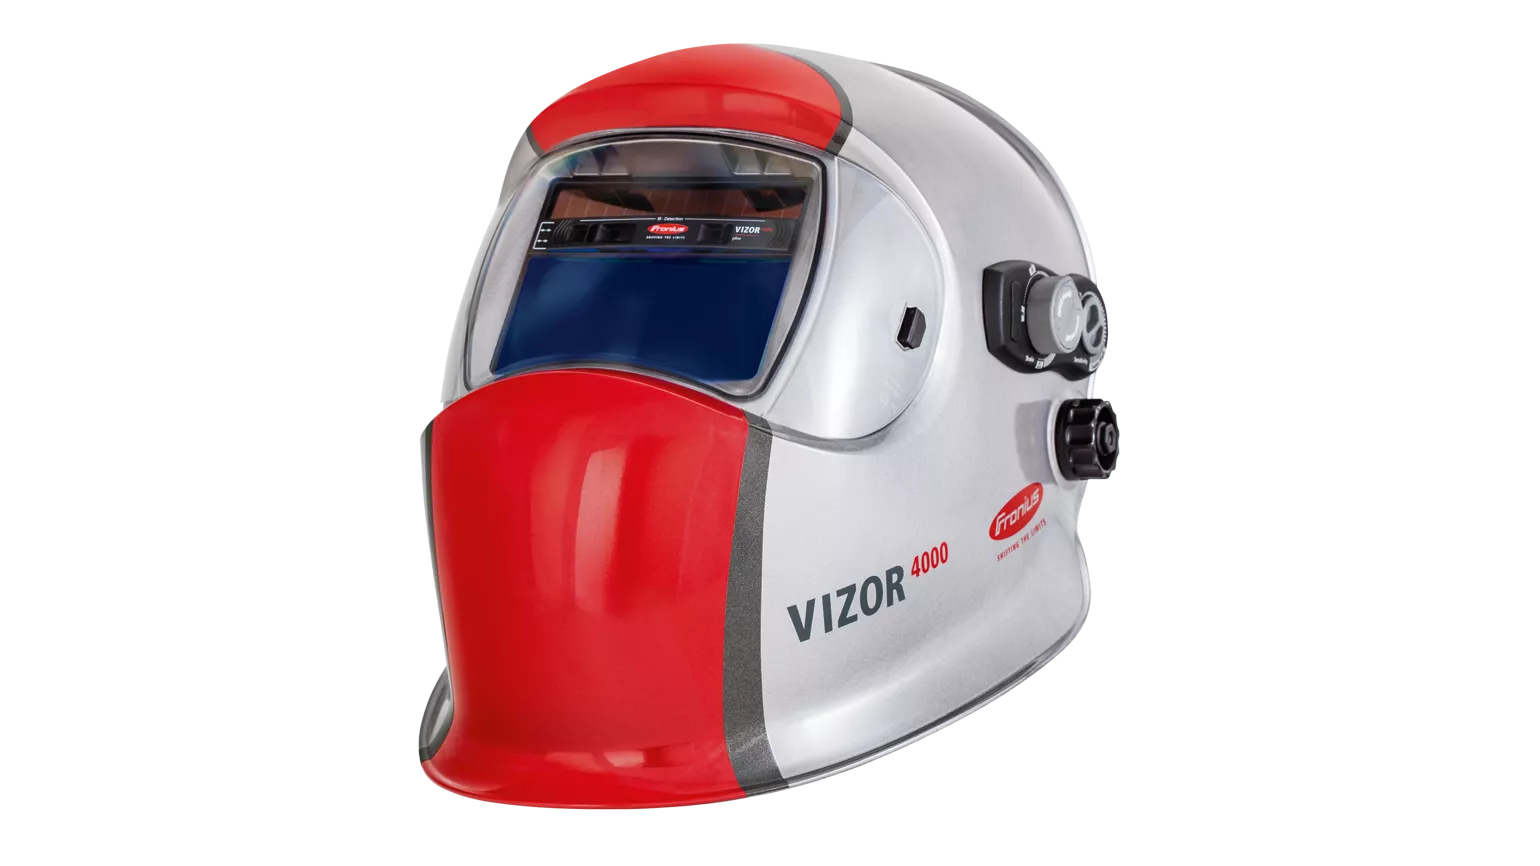 Careta de soldadura automática Fronius Vizor 4000 Plus - Seguridad - Careta  de soldadura automática